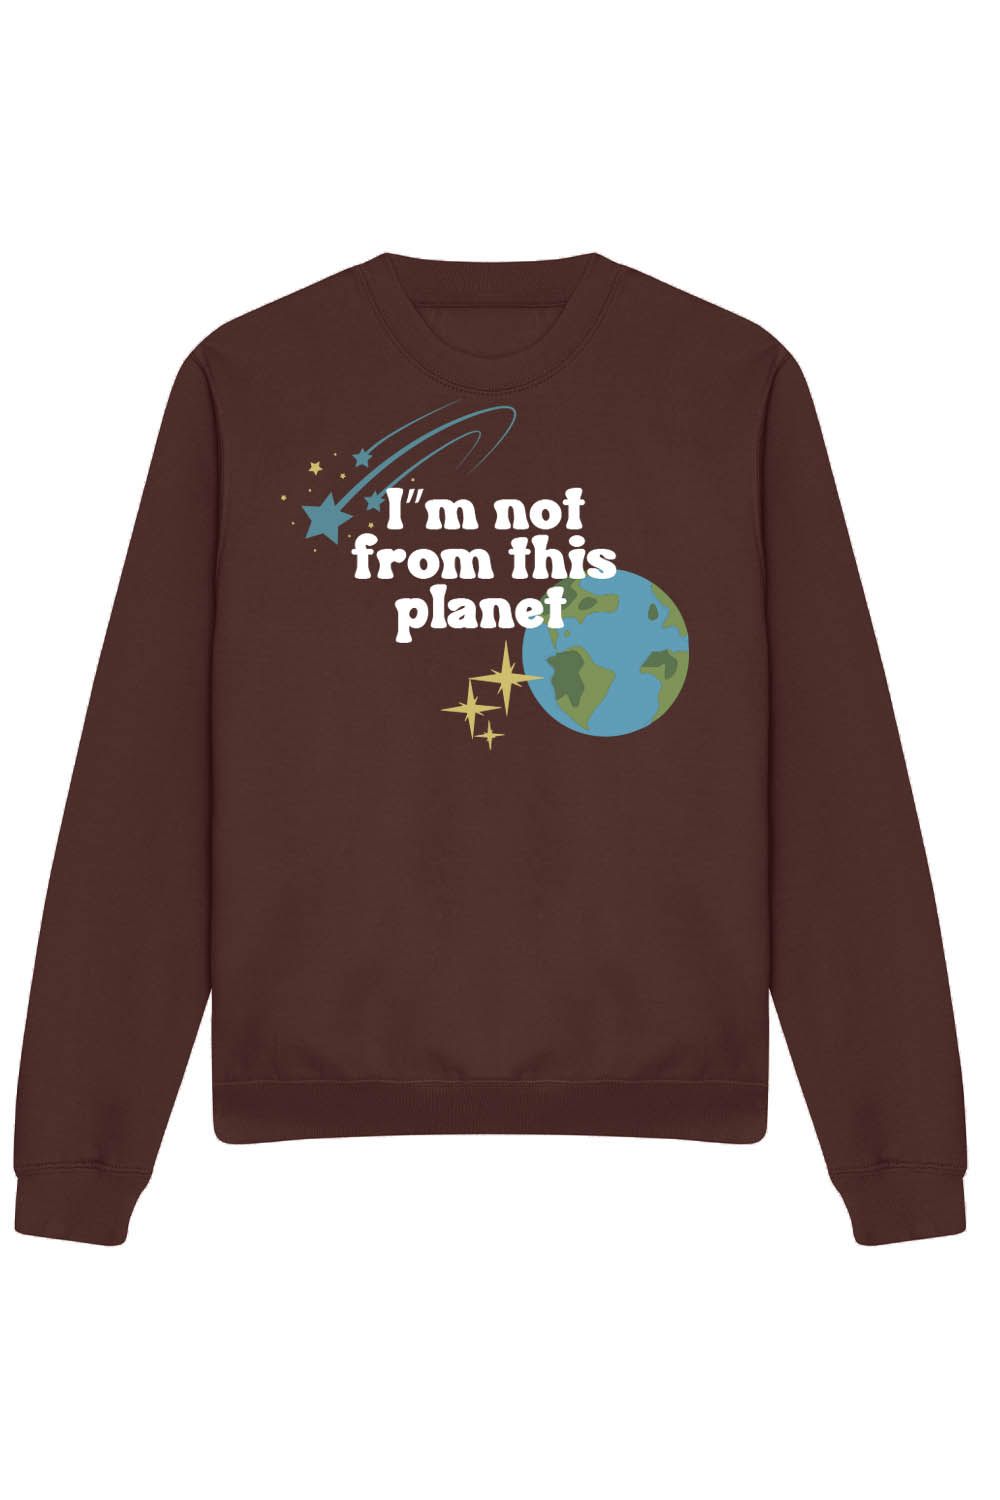 I'm Not From This Planet Sweatshirt in Chocolate Fudge (Custom Packs)